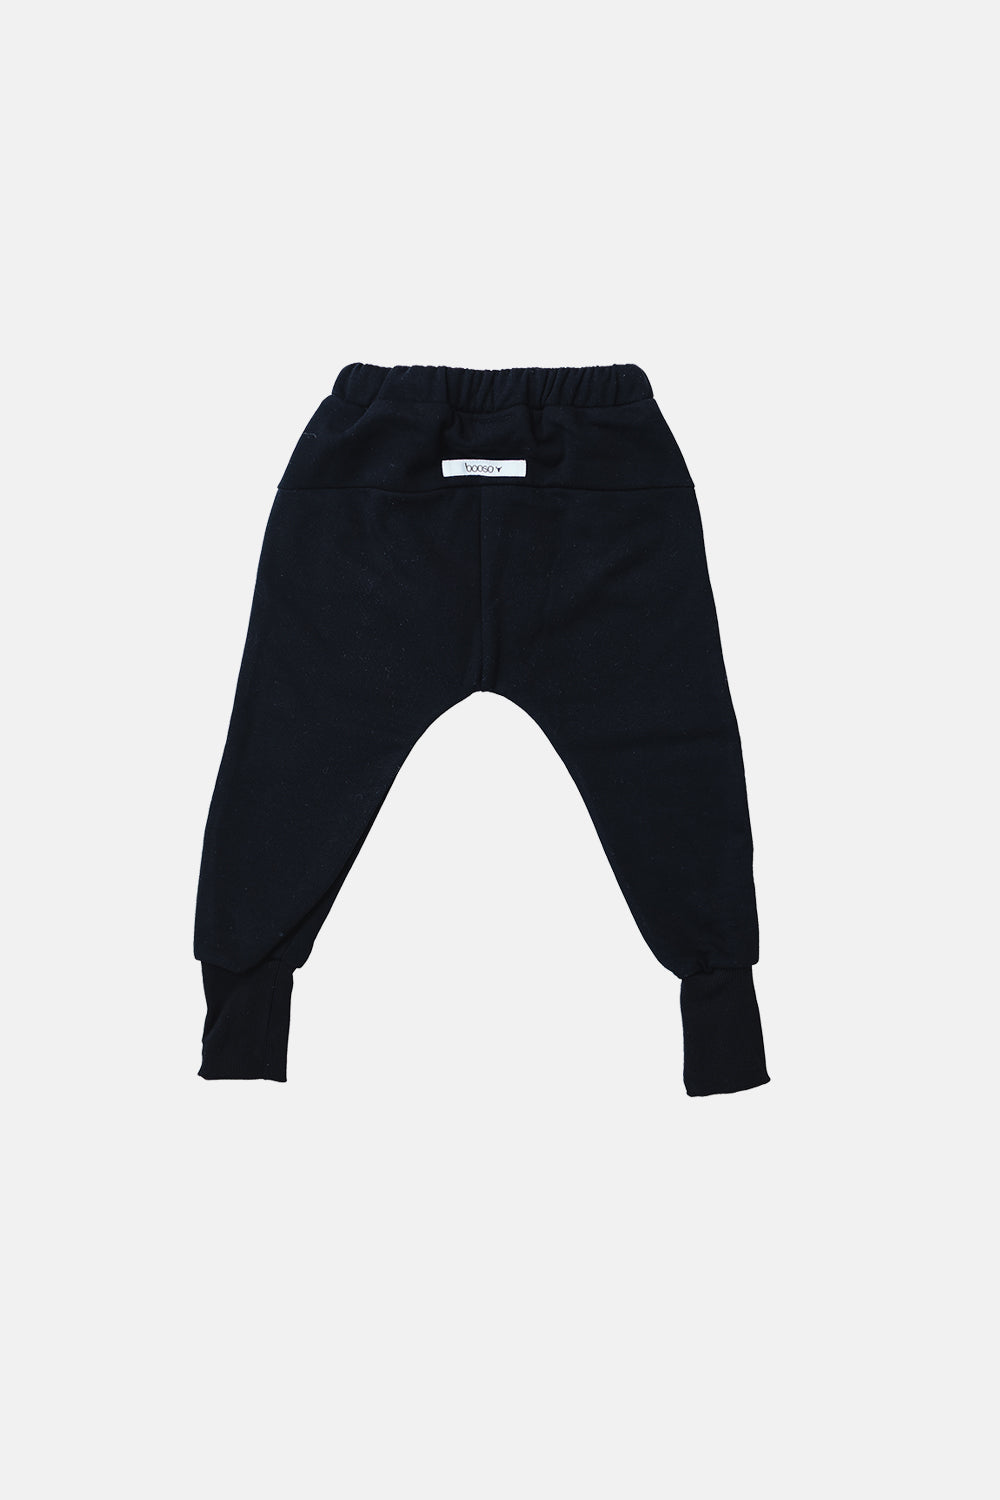 spodnie dziecięce -  WARM PANTS black